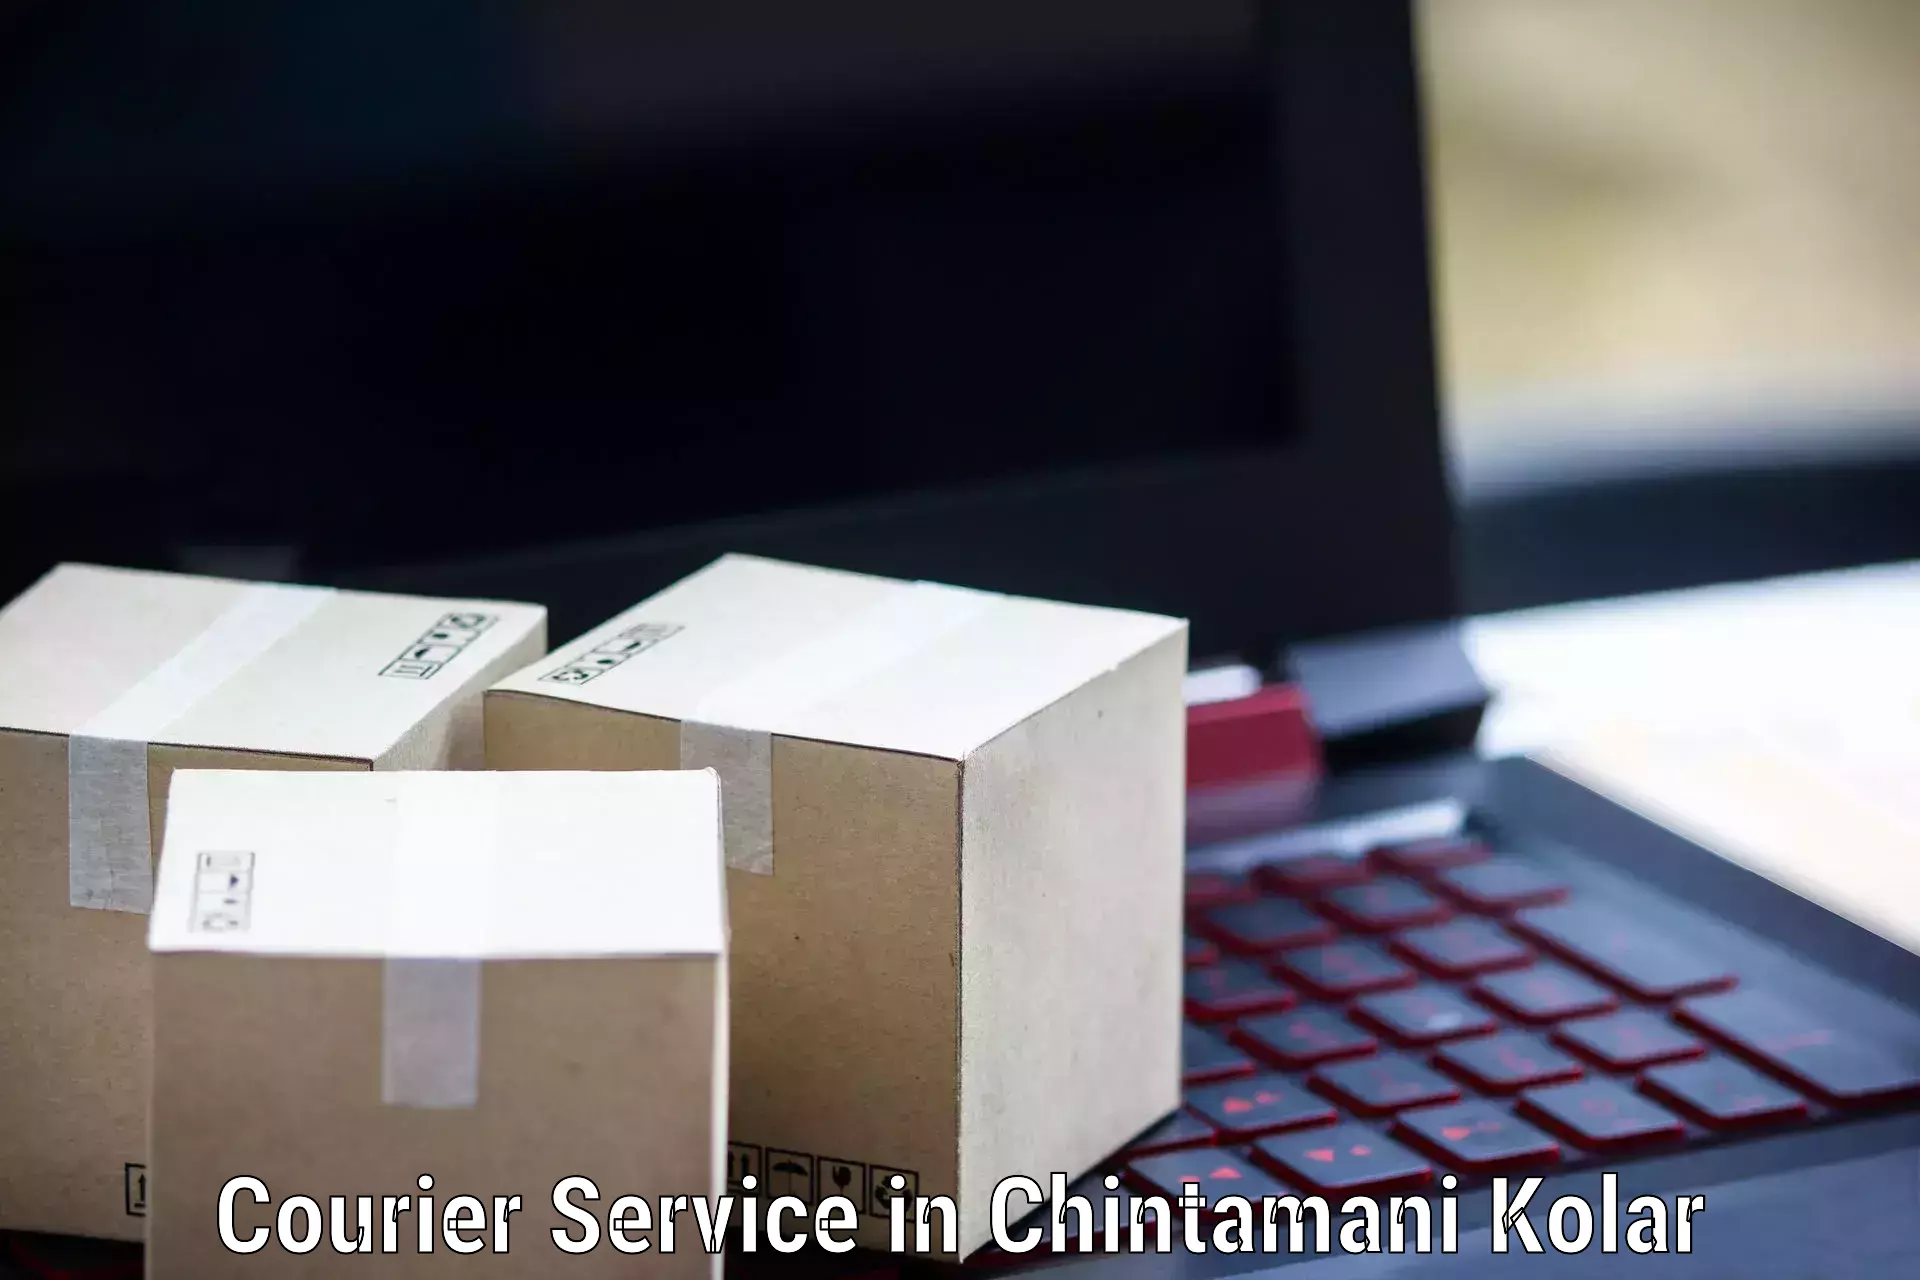 Online courier booking in Chintamani Kolar